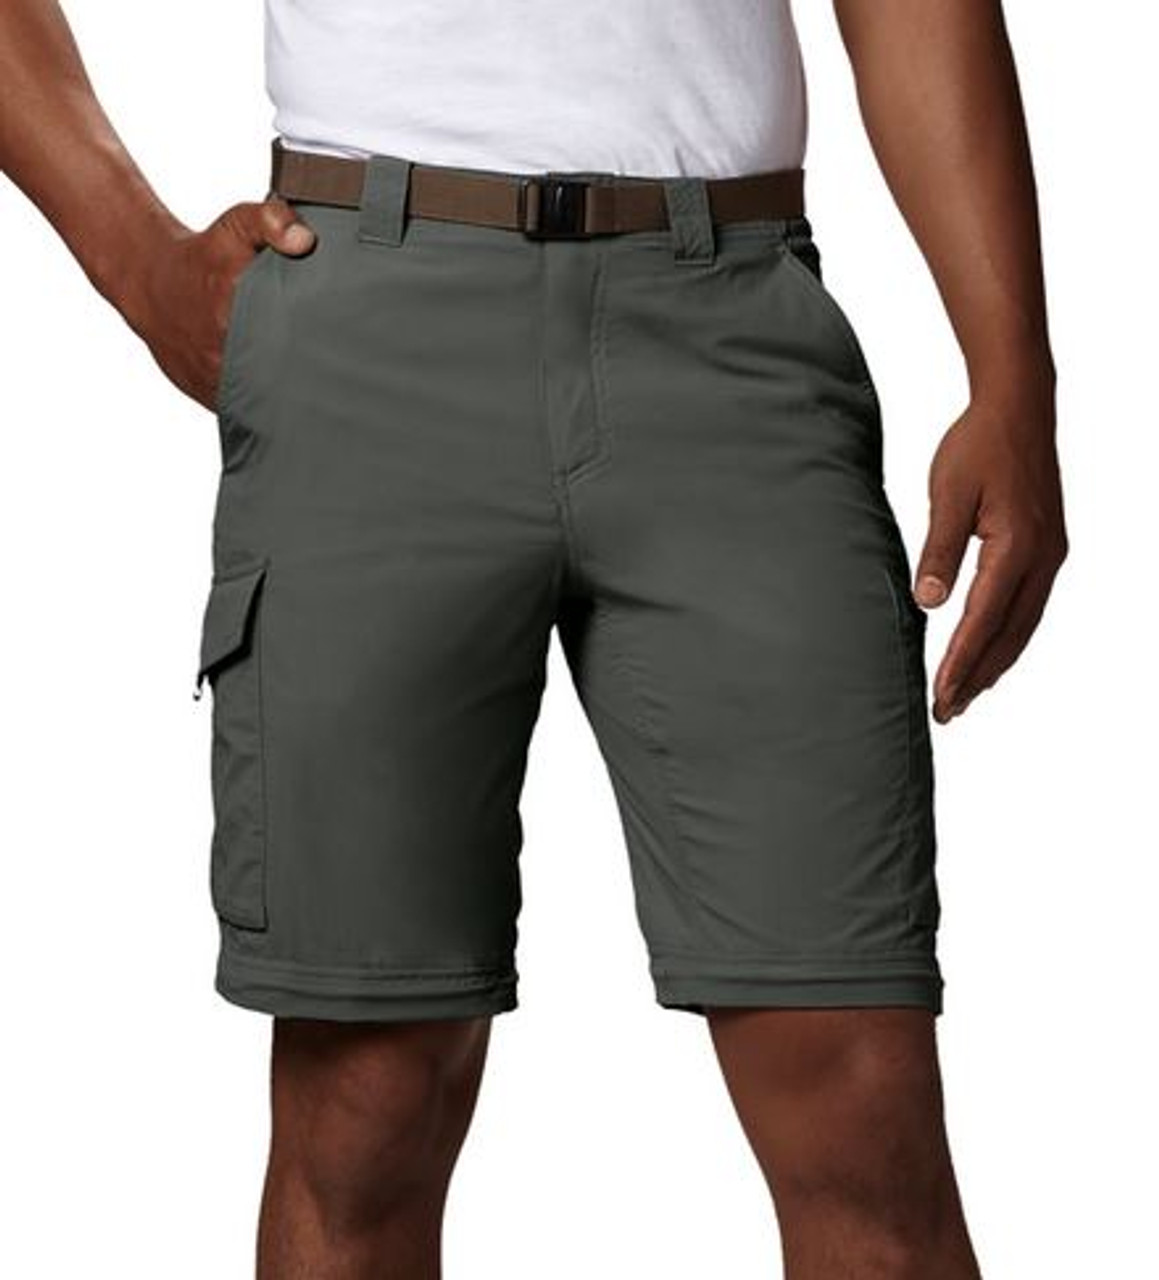 Columbia Silver Ridge Convertible, fishing pants and shorts